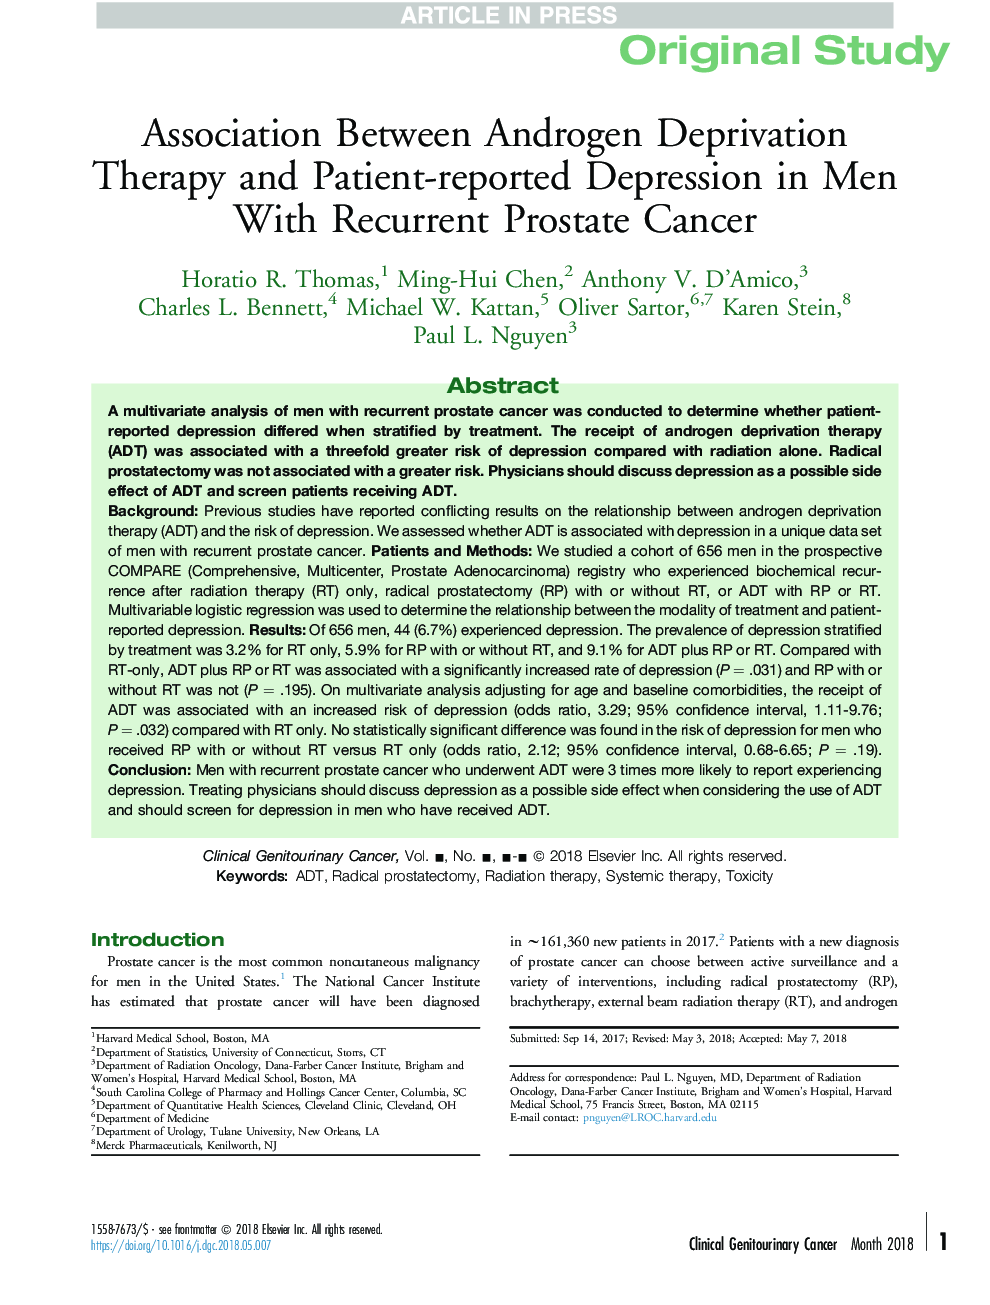 ارتباط بین درمان محرومیت اندروژن و افسردگی گزارش شده توسط بیماران مبتلا به سرطان پروستات مجدد 